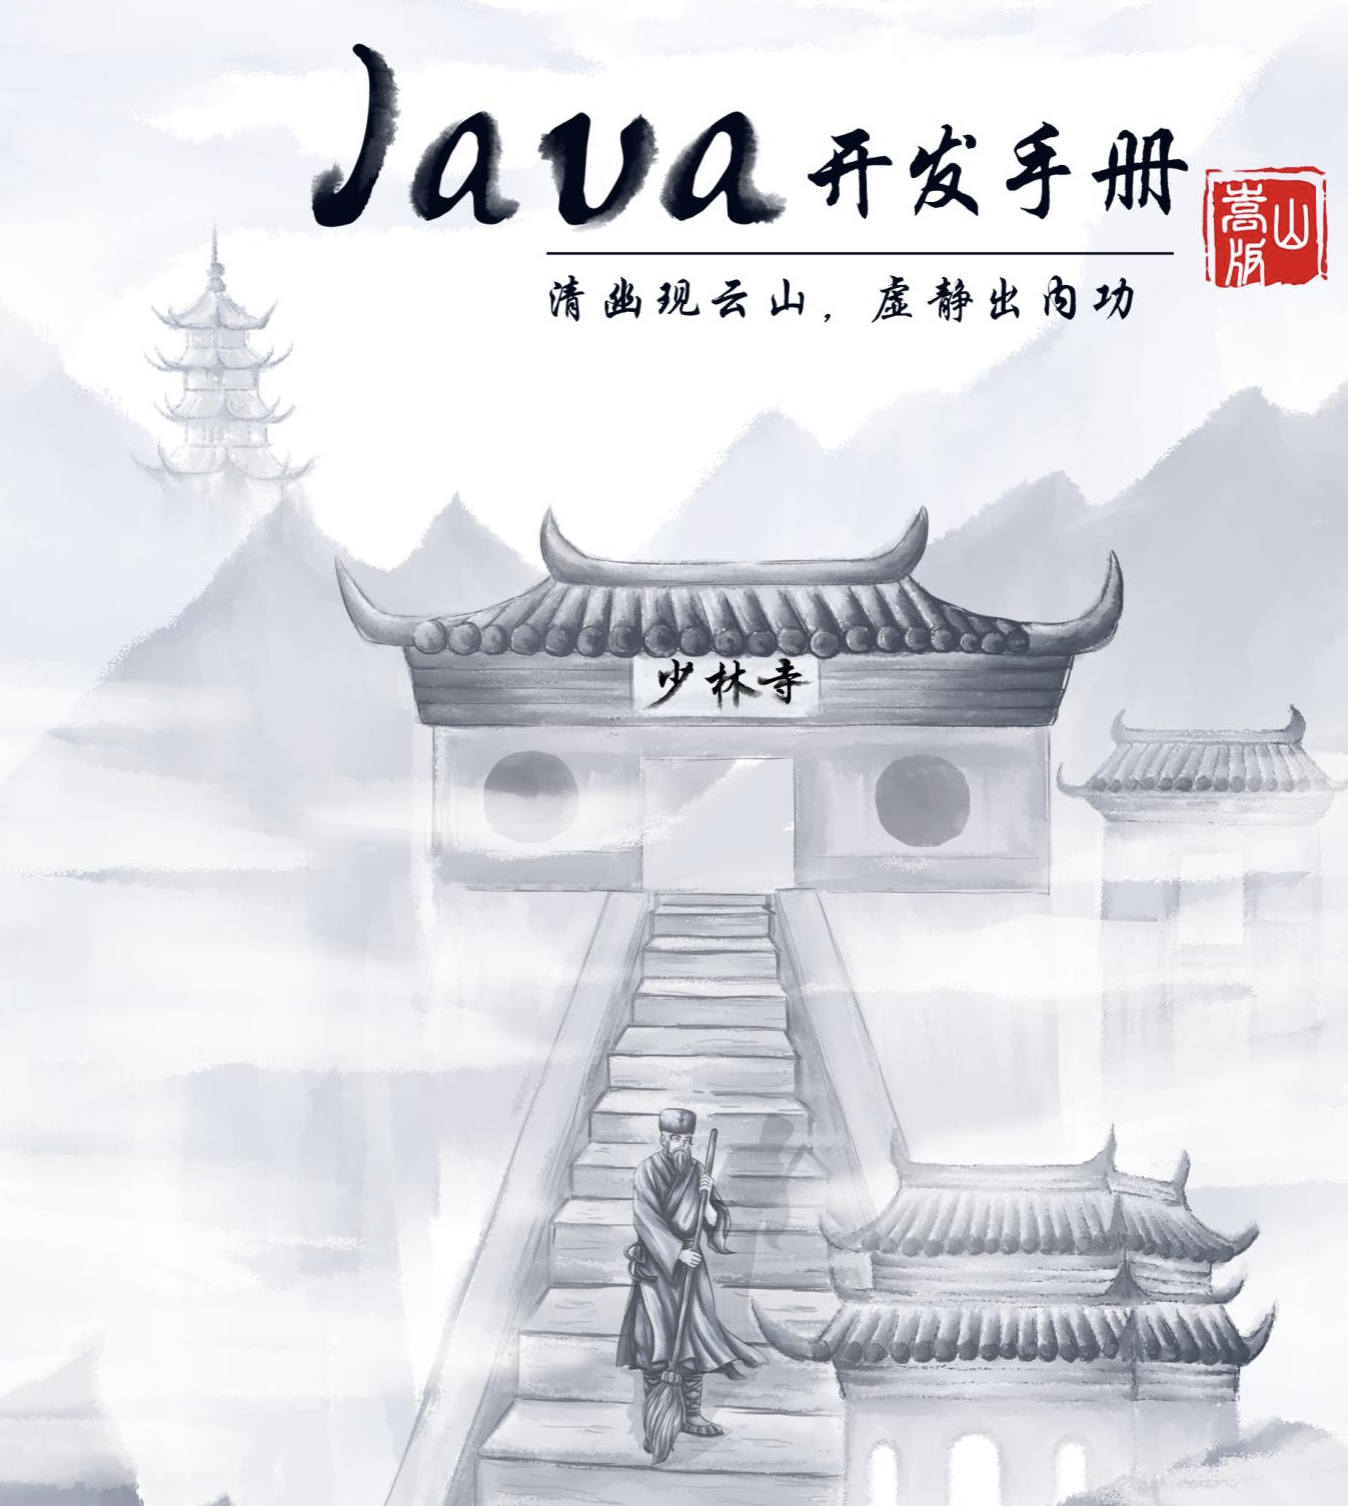 阿里出品的最新版 Java 开发手册，嵩山版，扫地僧